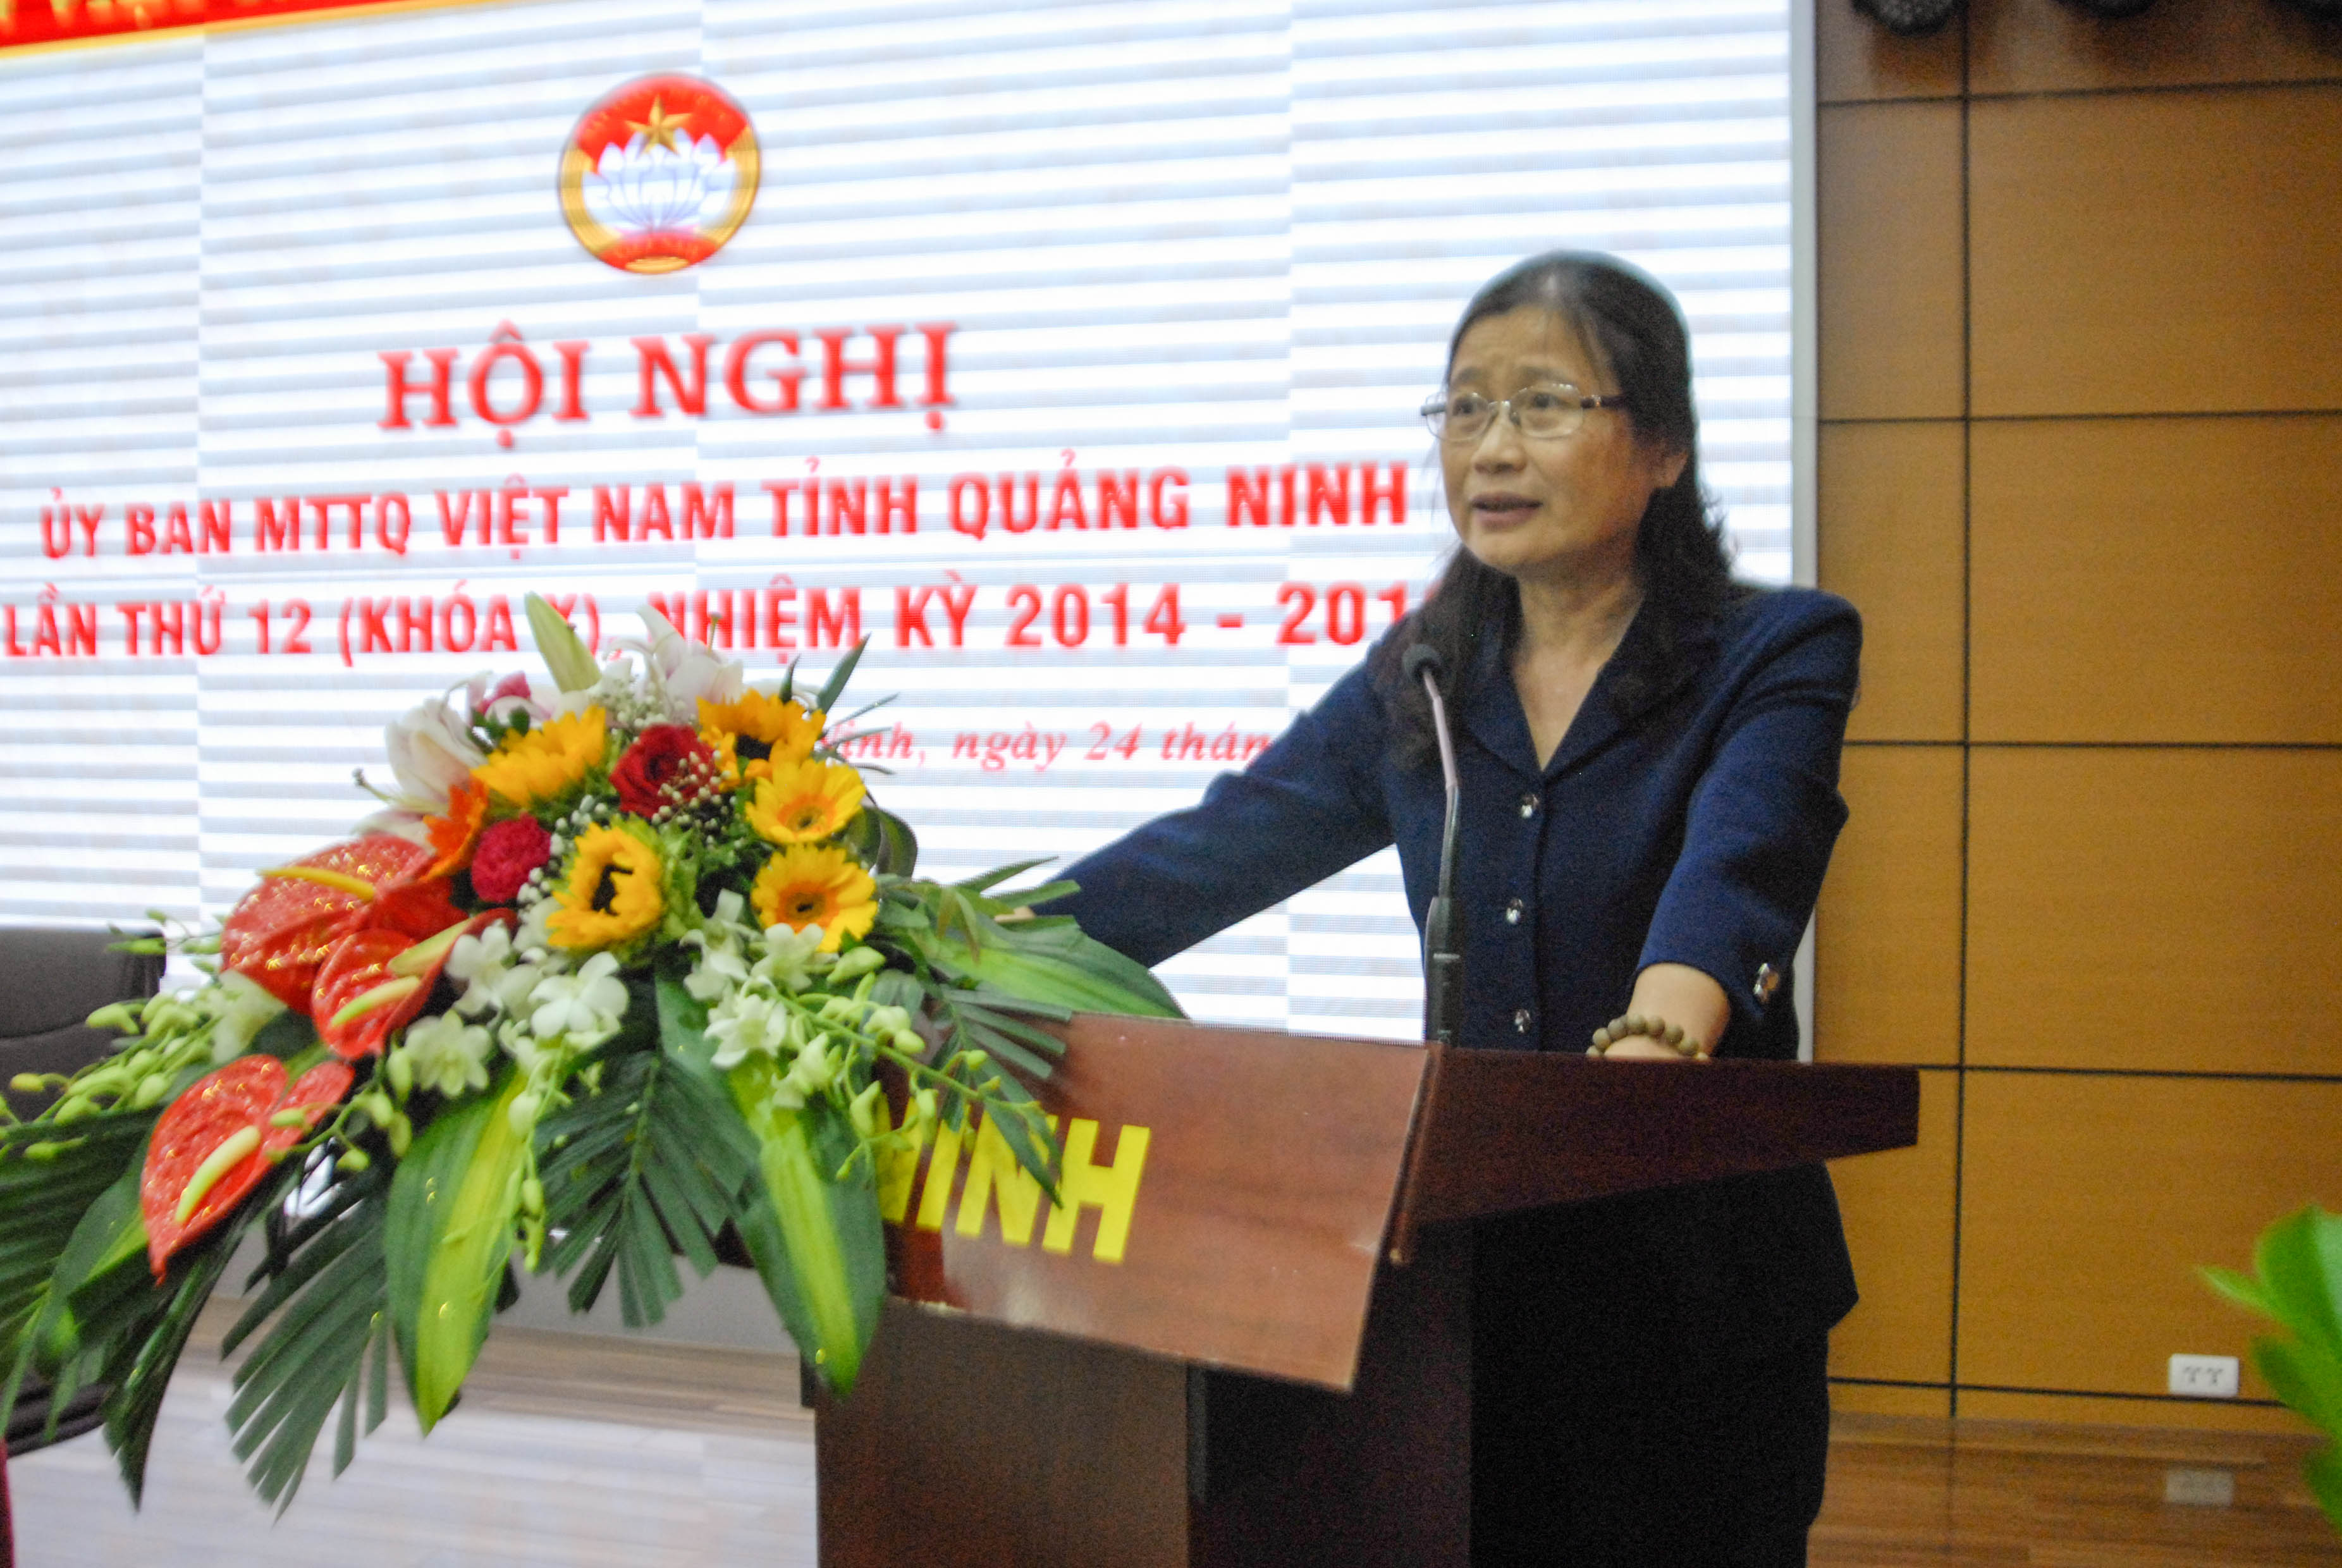 Đồng chí Đỗ Thị Hoàng, Phó Bí thư Thường trực Tỉnh ủy, phát biểu tại hội nghị.